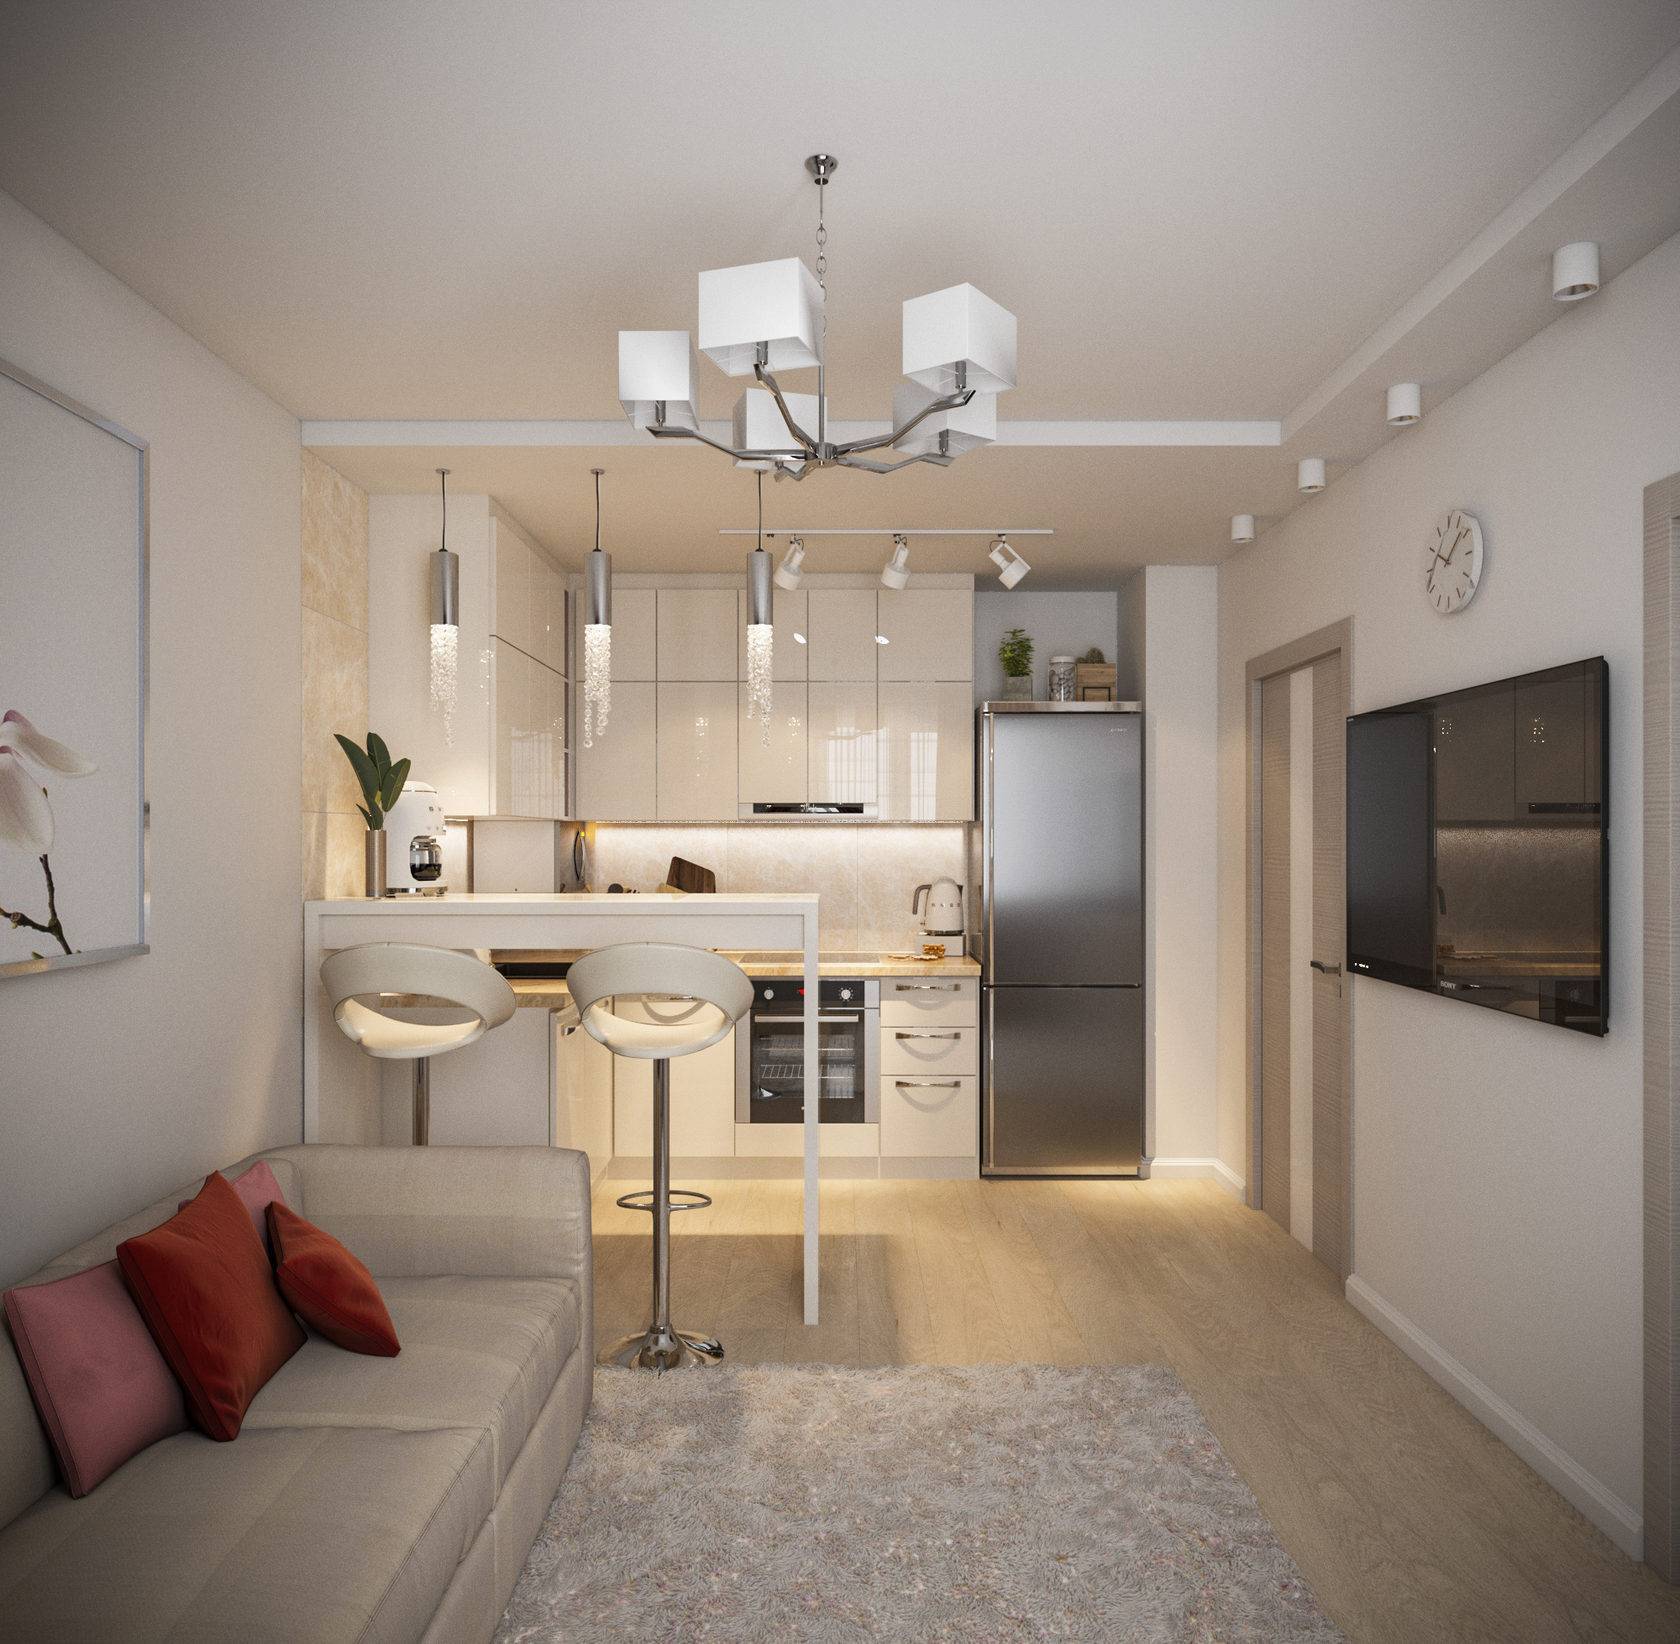 Дизайн кухни 15 квадратов: особенности выбора отделки для кухни гостиной 15 кв м